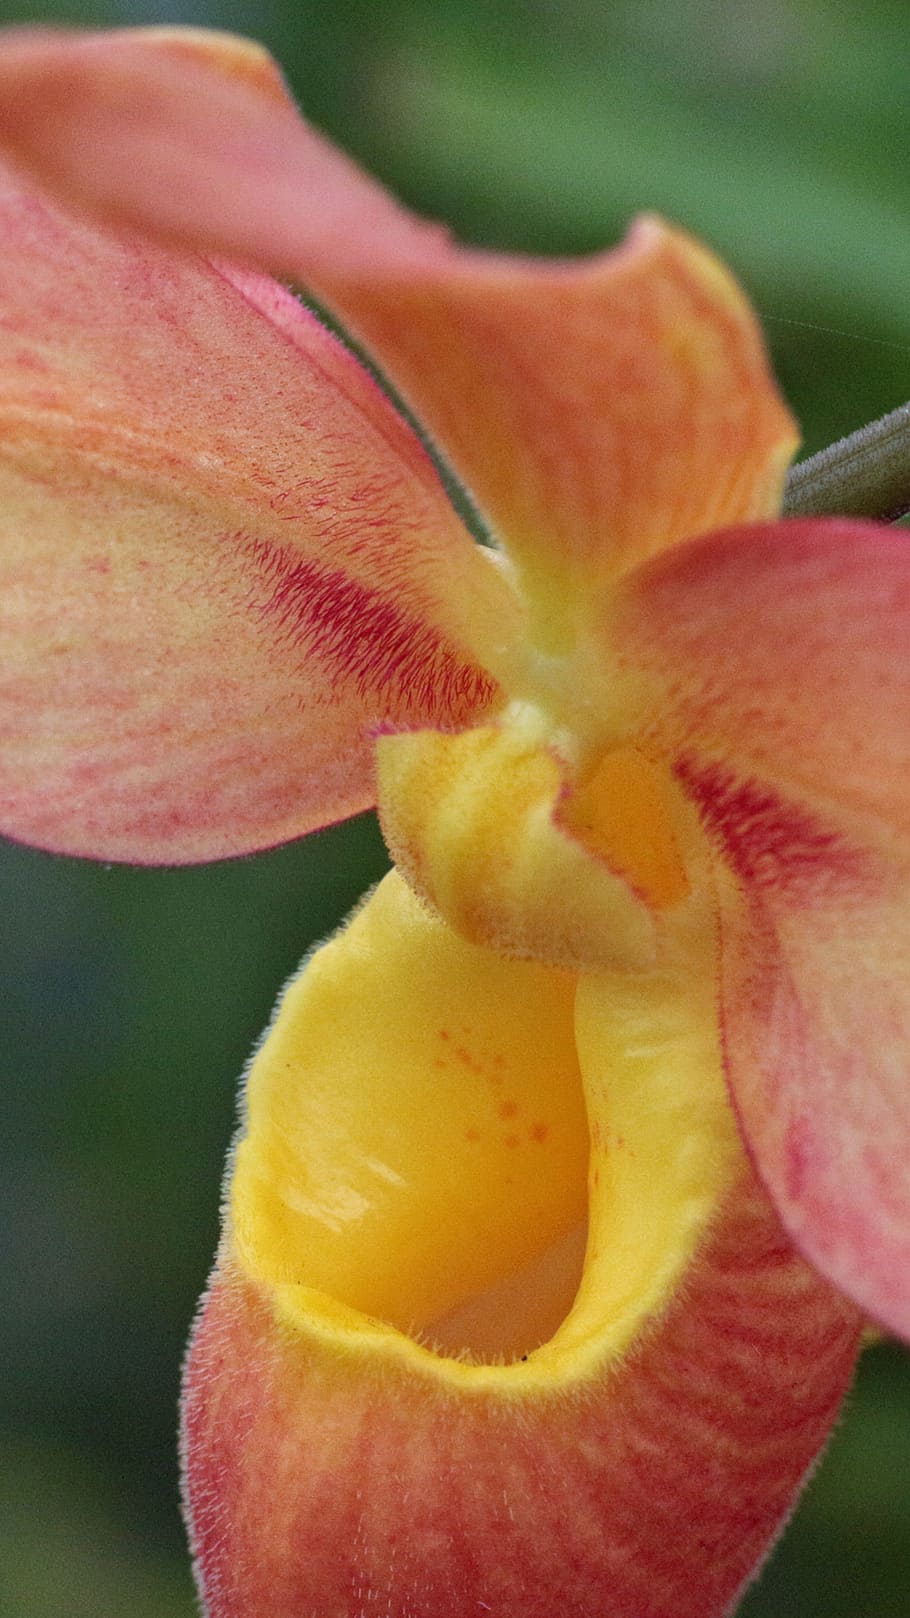 orange, yellow, phragmipedium orchid, closeup, image shot, shot., lady slipper, cypripedioideae, phragmipaphium, labellum